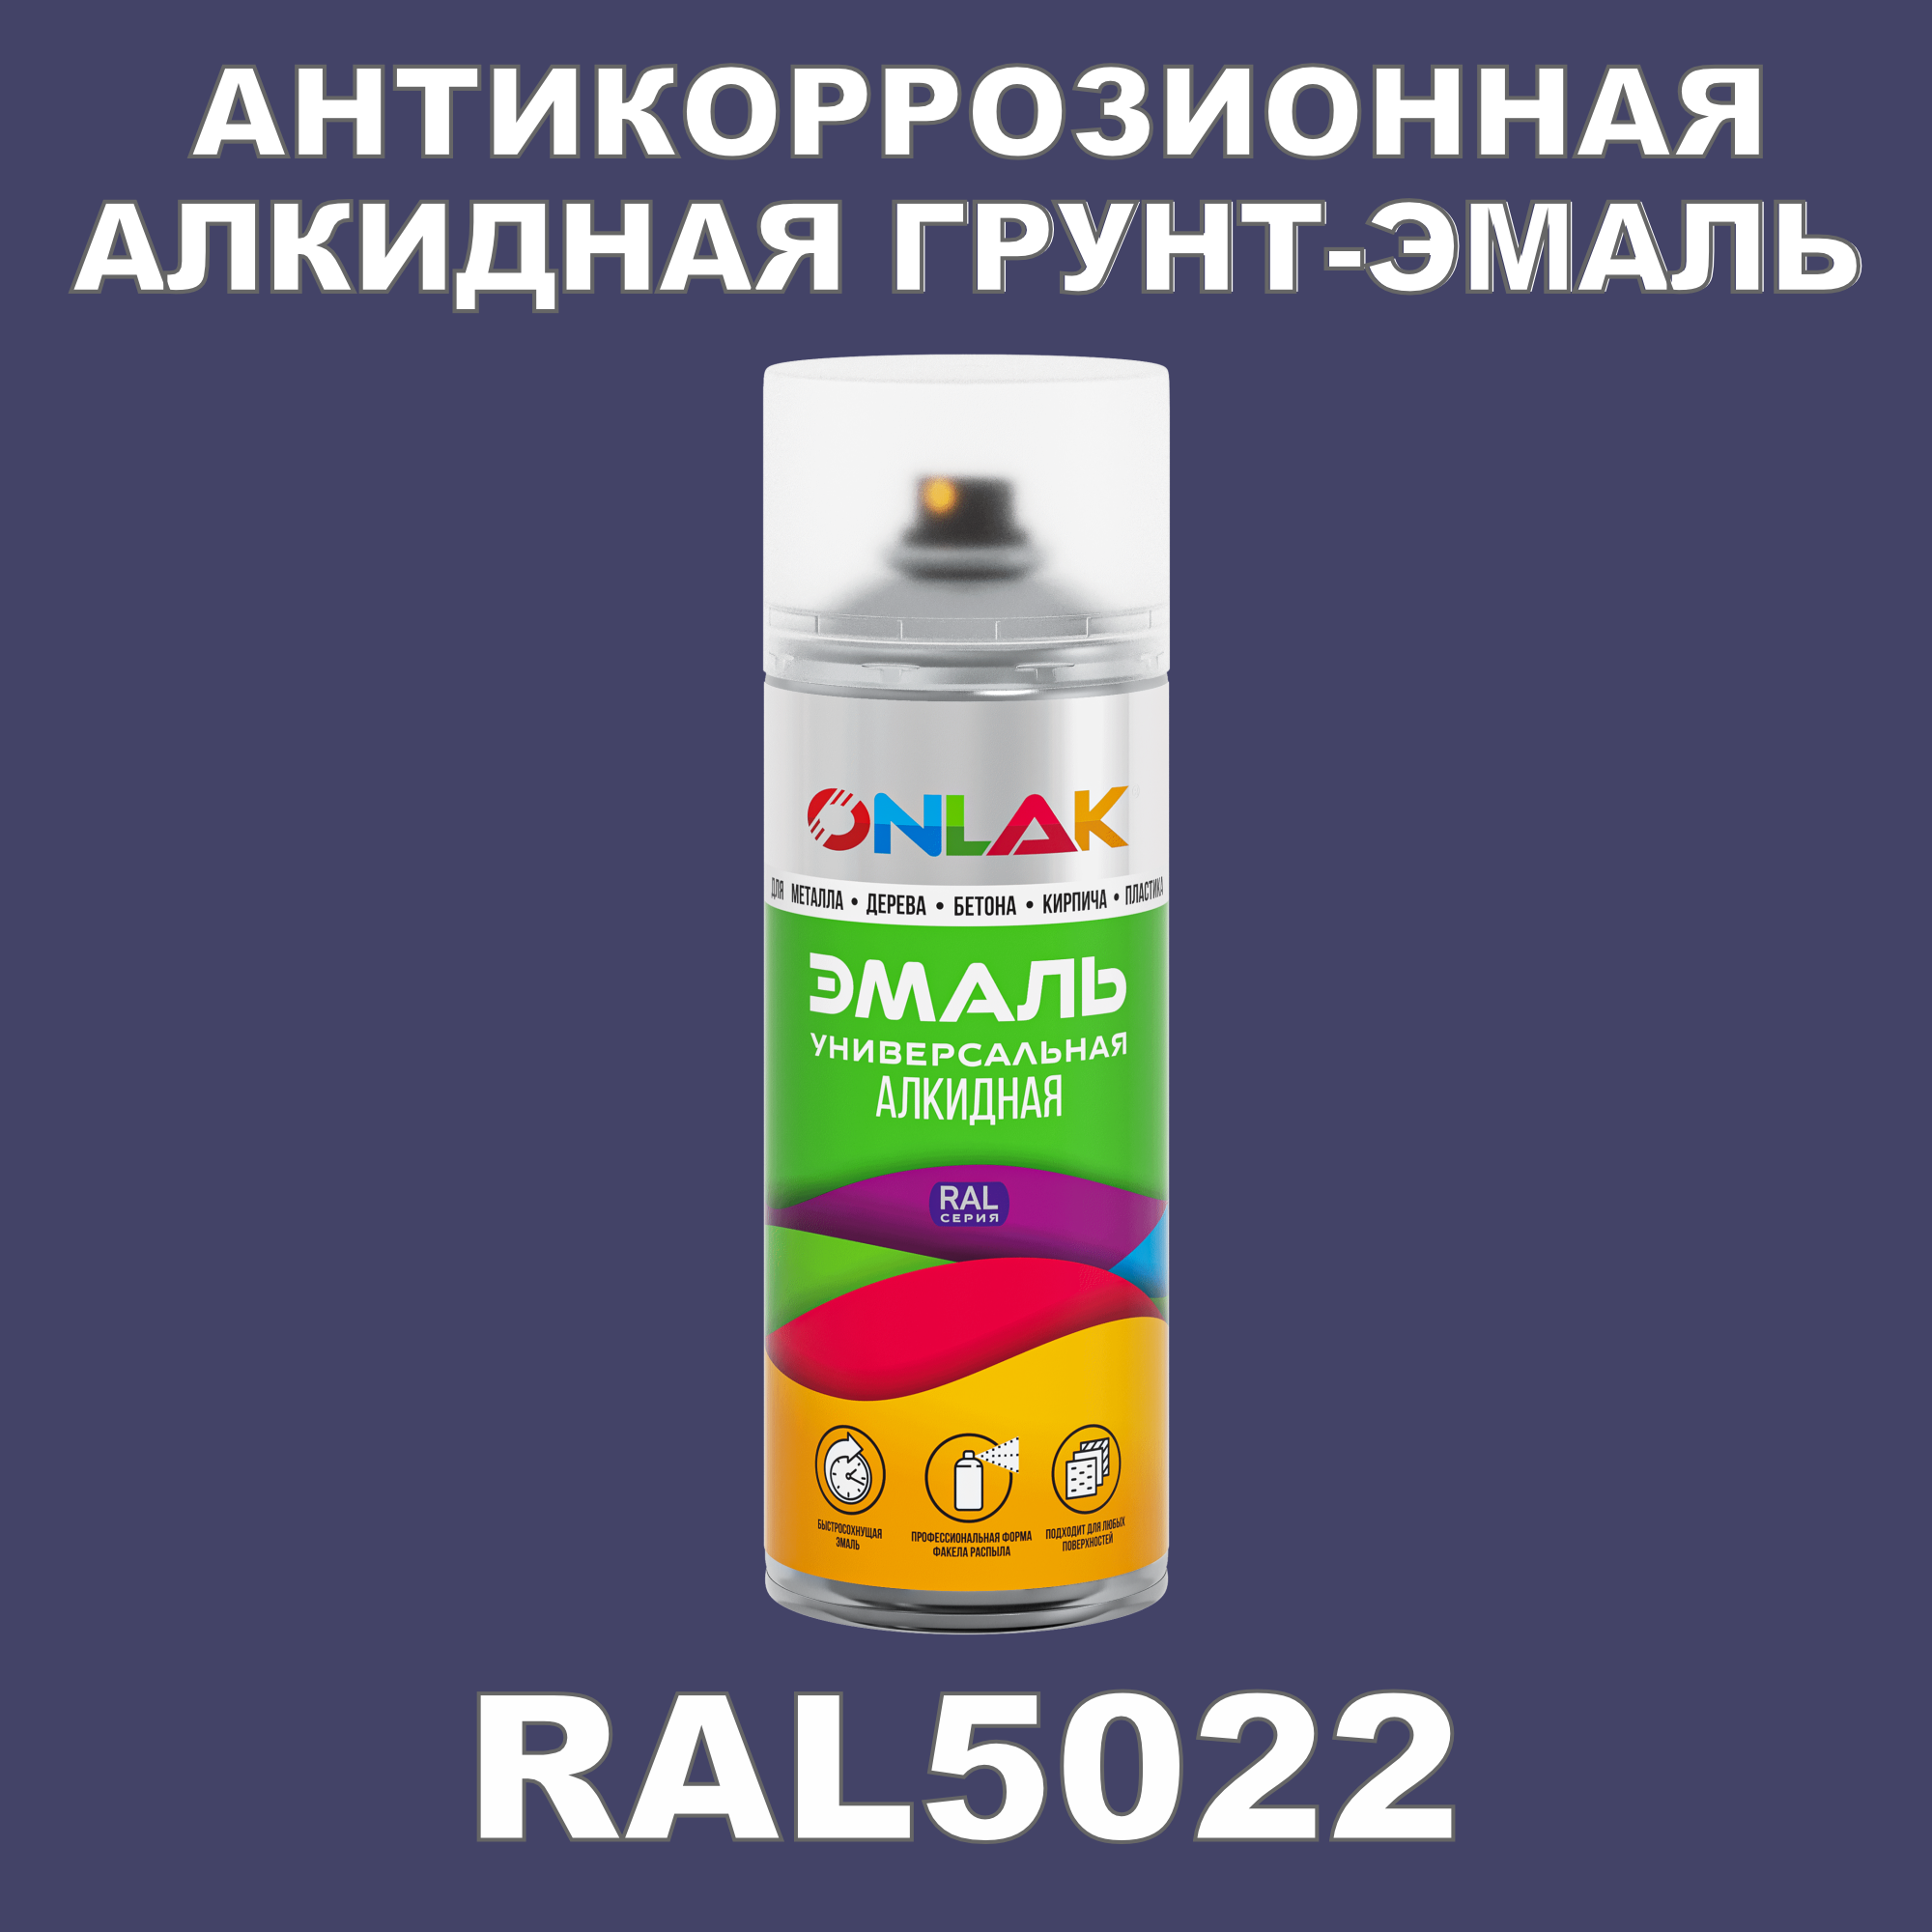 Антикоррозионная грунт-эмаль ONLAK RAL5022 полуматовая для металла и защиты от ржавчины